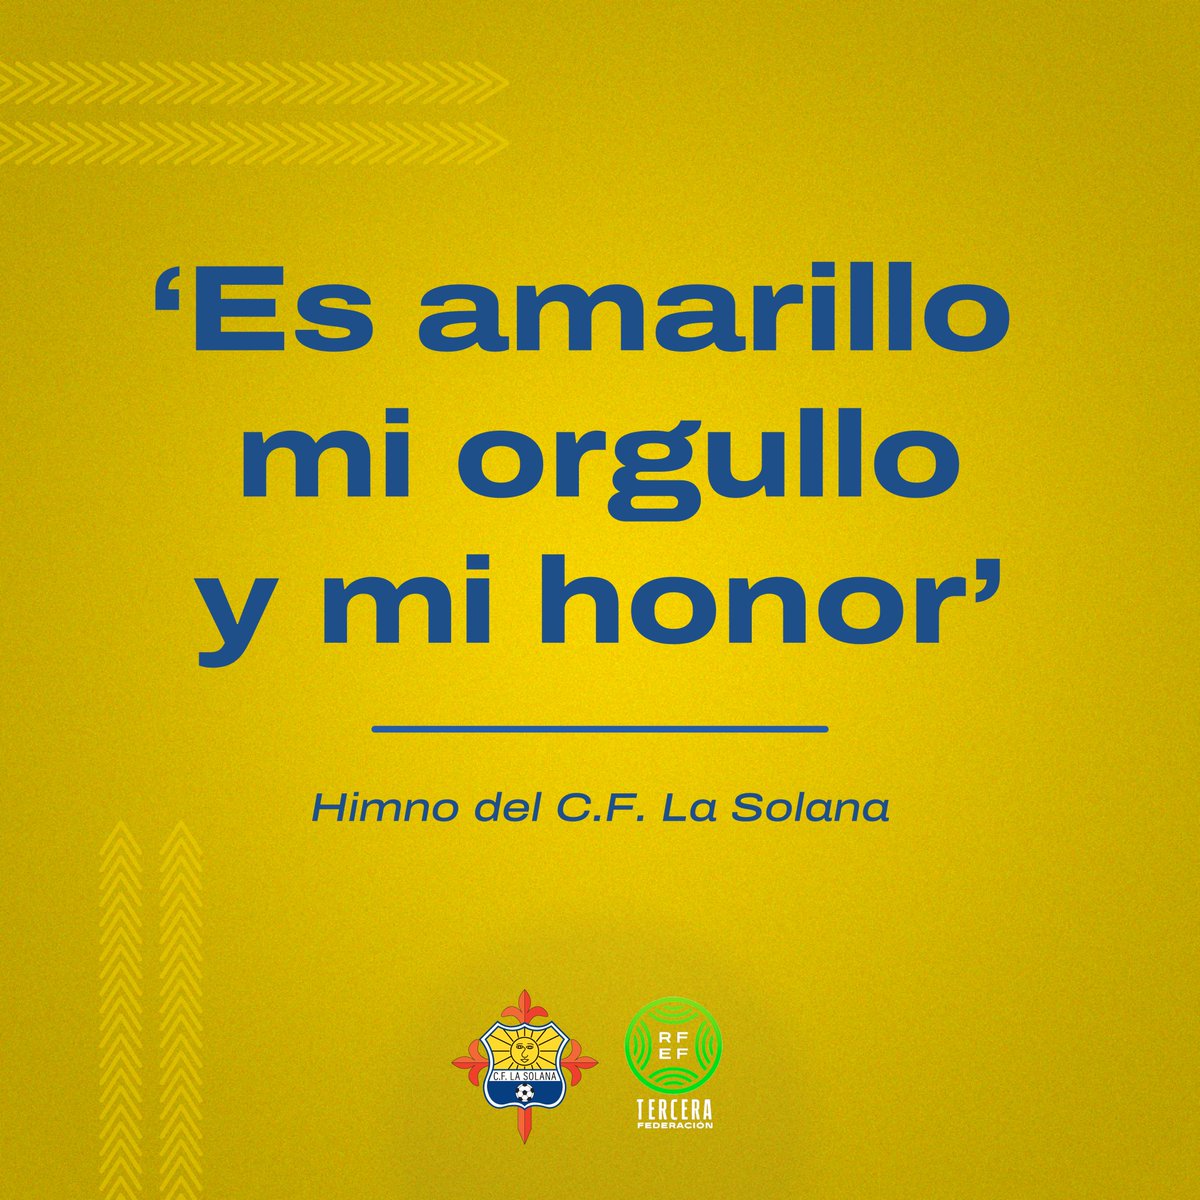 🟡 Es amarillo mi orgullo y mi honor
Seguro que sabes cómo sigue...
#CFLaSolana #TerceraRFEF #canteraamarilla